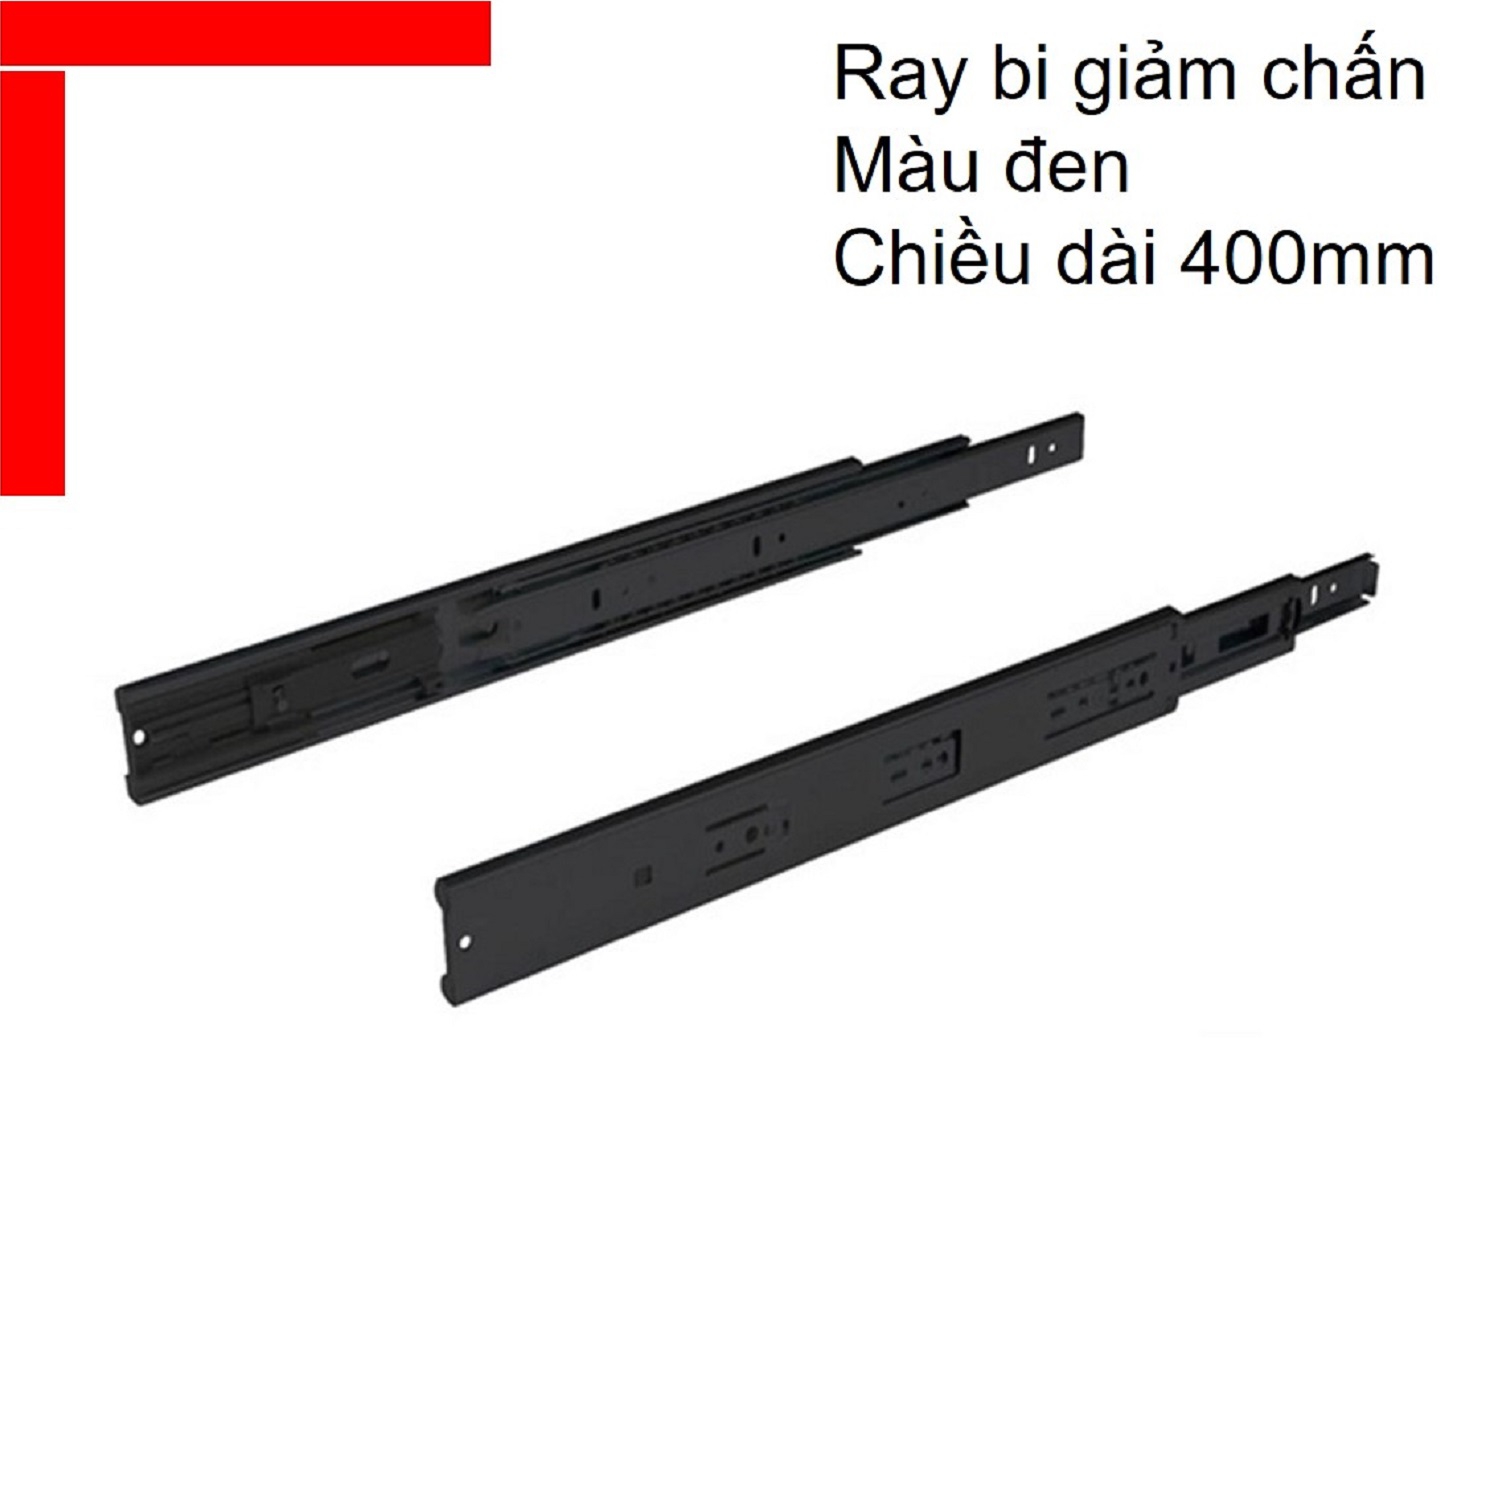 Ray bi giảm chấn Hafele chiều dài 400mm màu đen 494.02.073